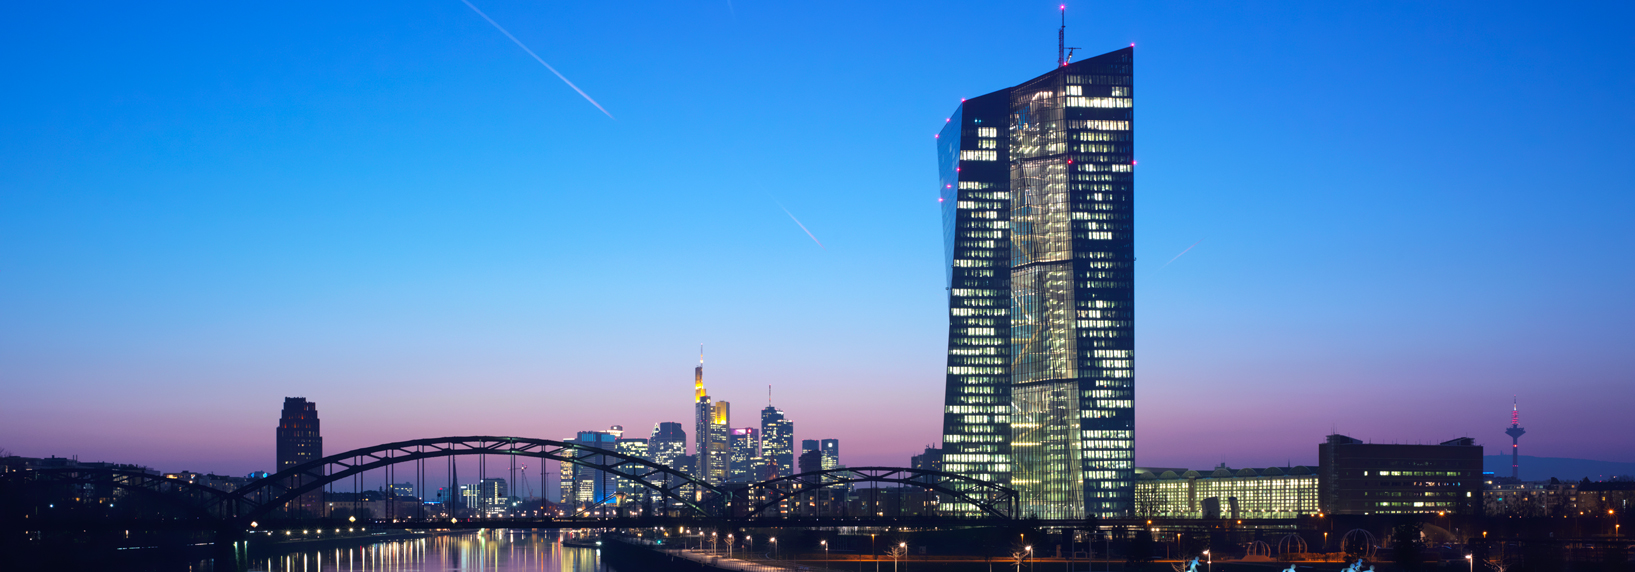 Fassadenbauer seele realisiert eine Schild-Hybrid-Fassade für die komplexe Gebäudeform der Europäischen Zentralbank in Frankfurt am Main, Deutschland.